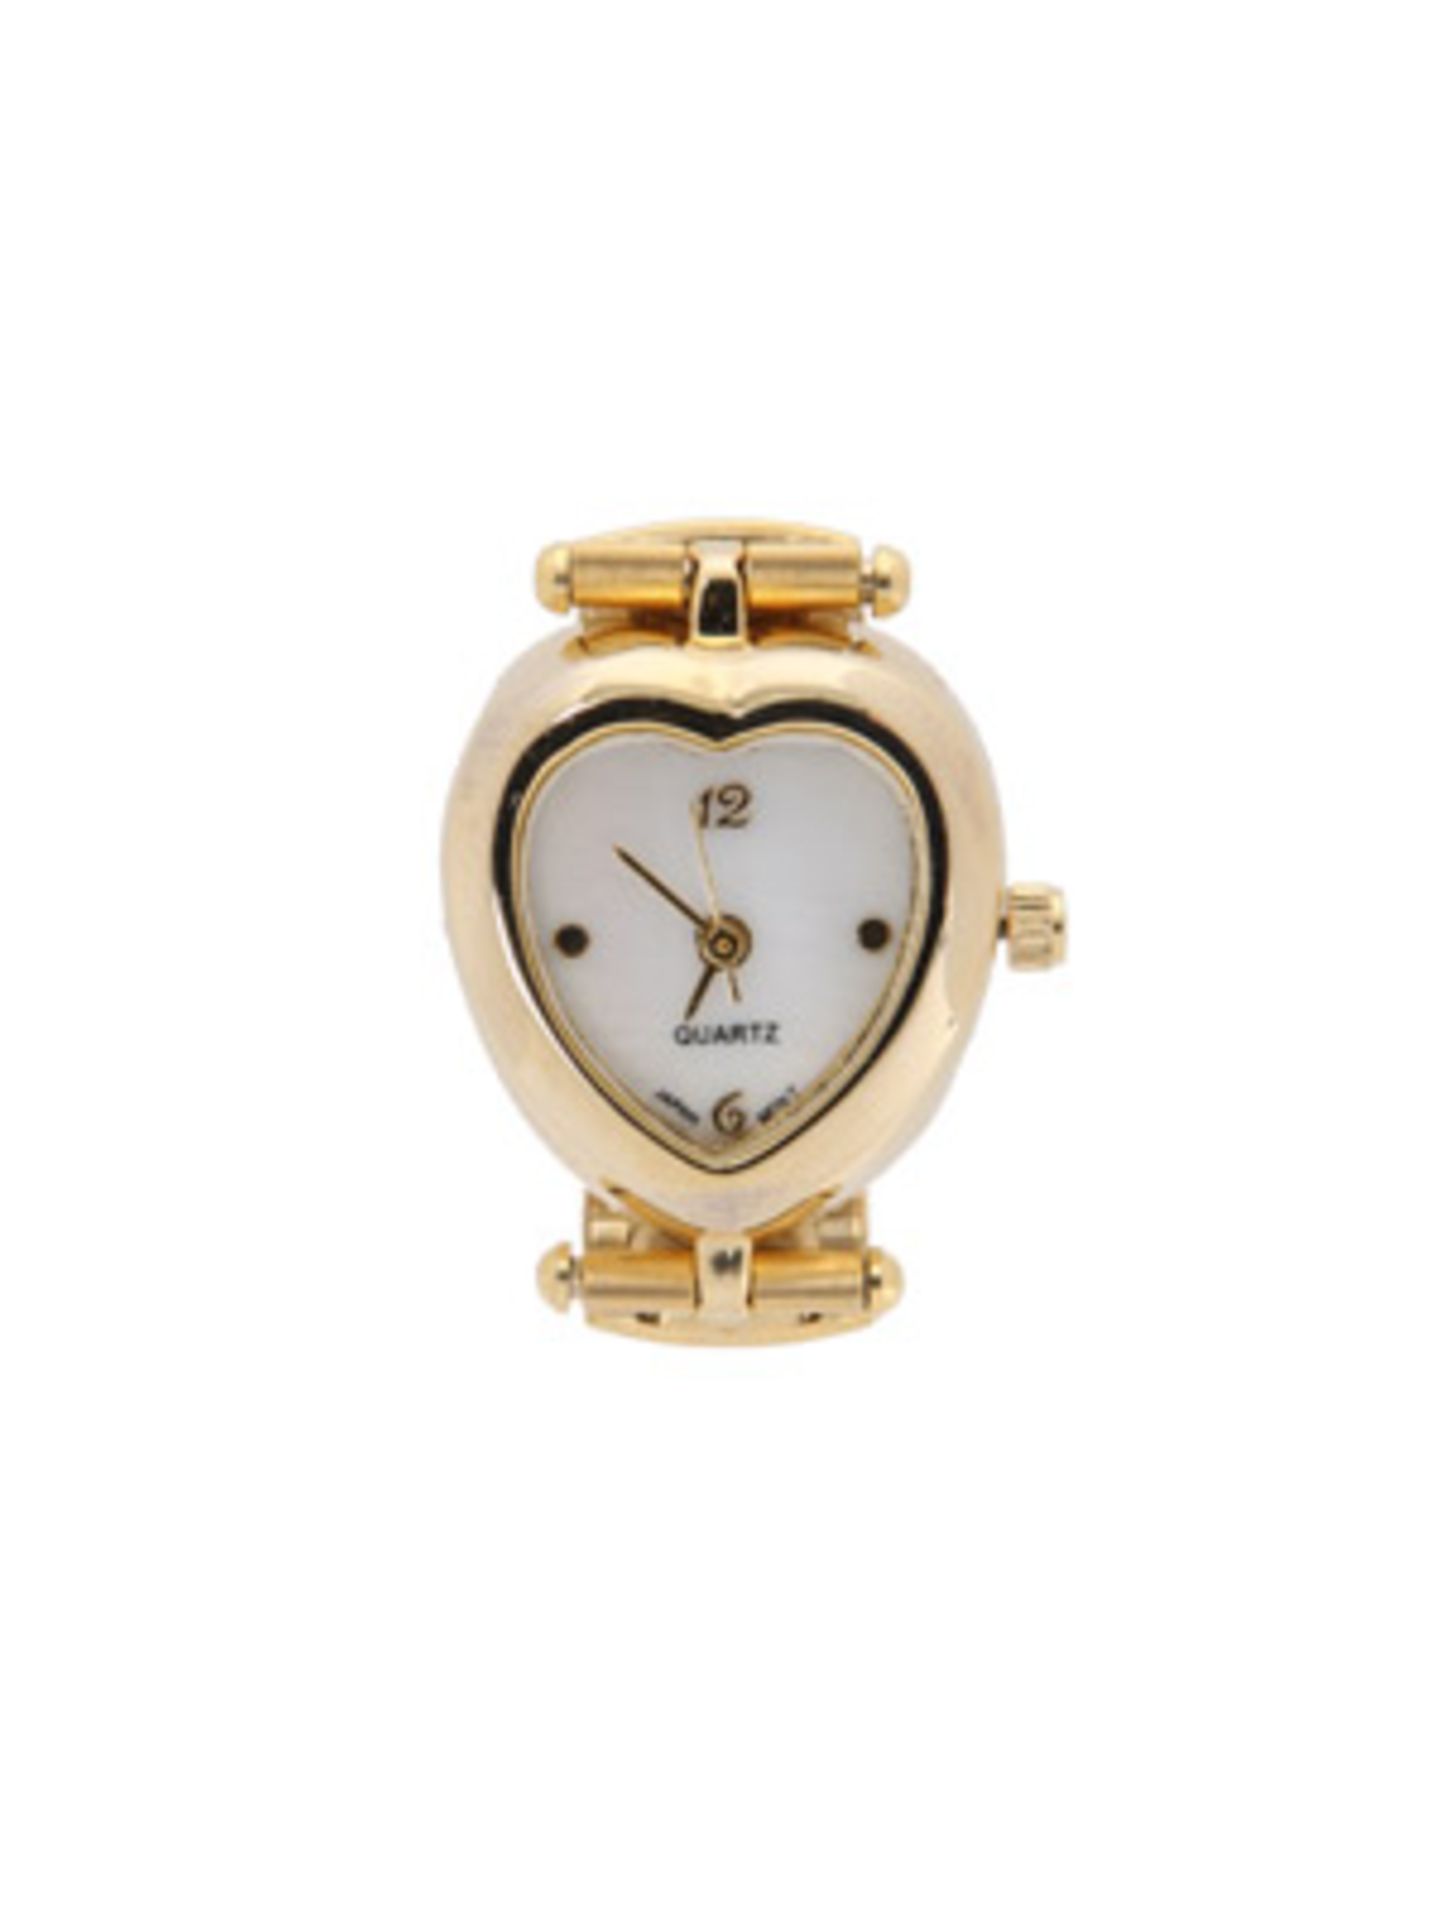 Goldene Uhr mit herzförmig eingefasstem Ziffernblatt von Urban Outfitters, um 25 Euro.